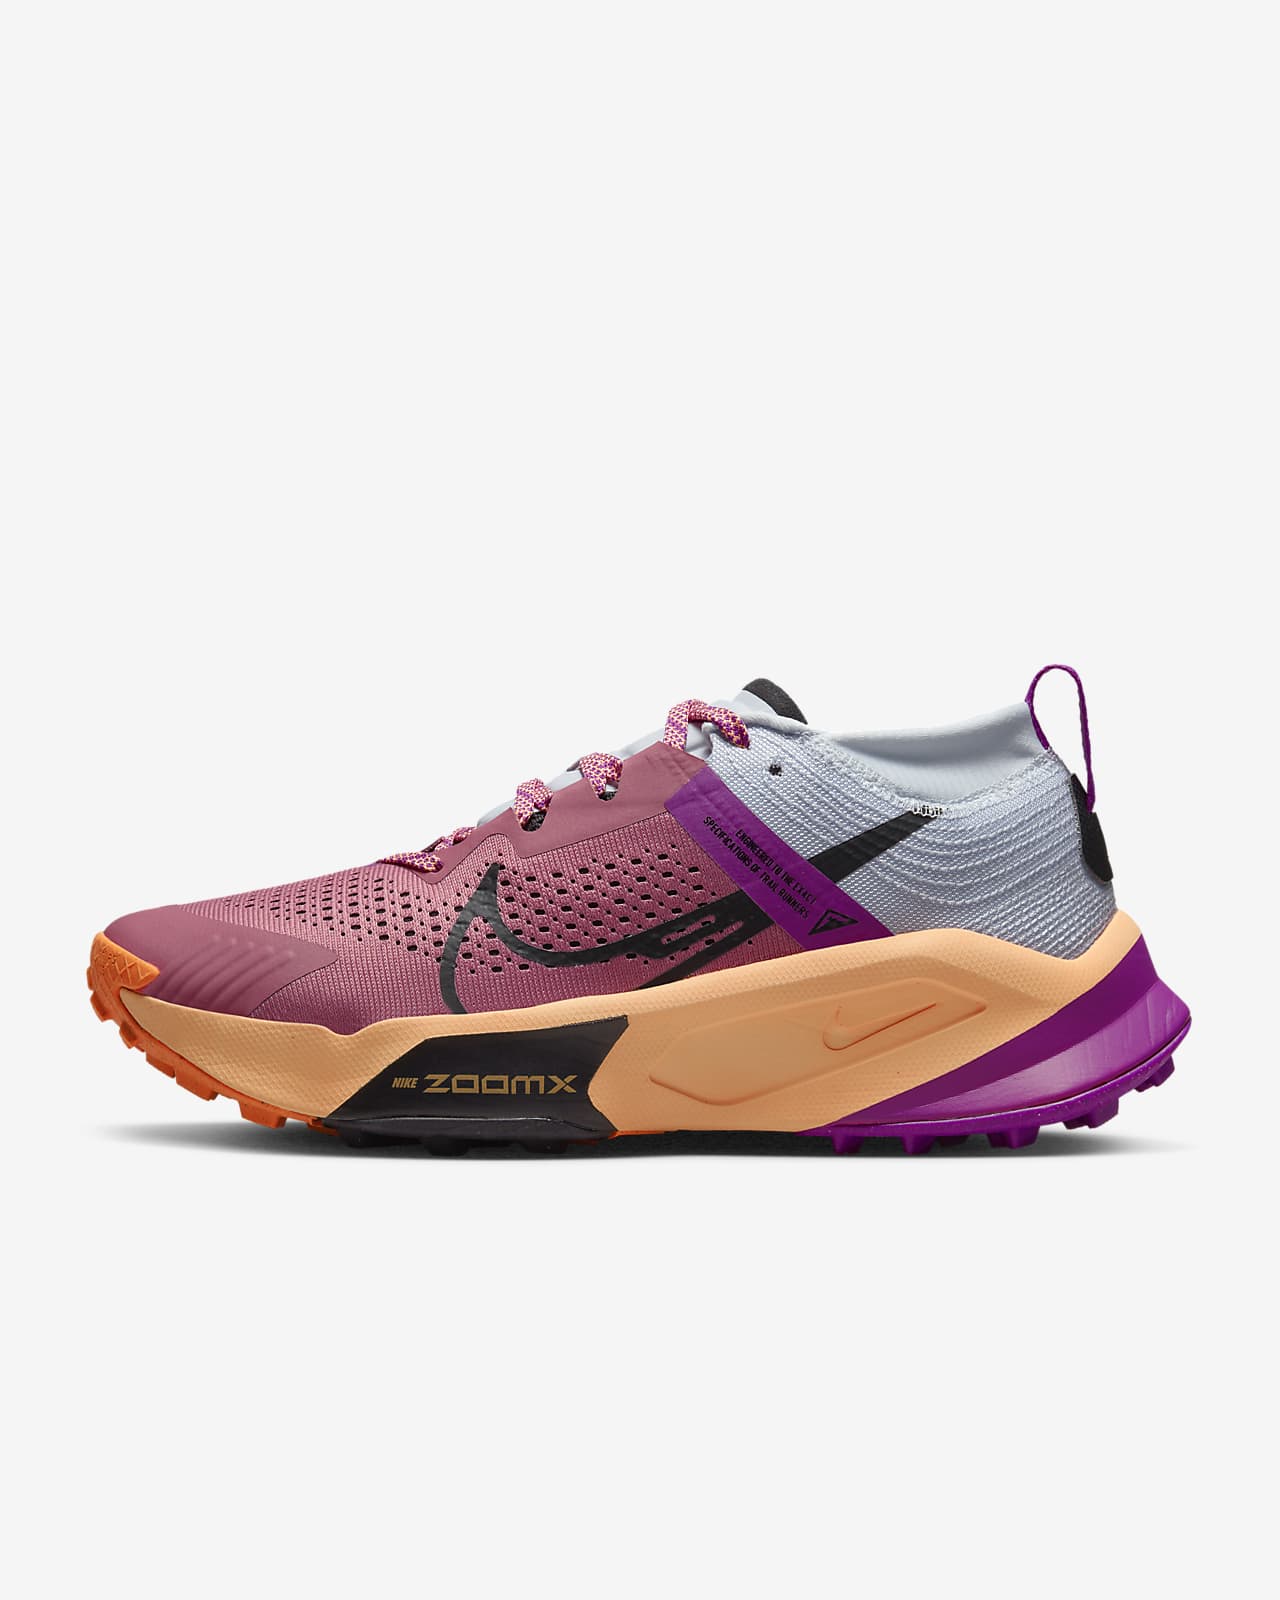 Γυναικεία παπούτσια για τρέξιμο σε ανώμαλο δρόμο Nike ZoomX Zegama